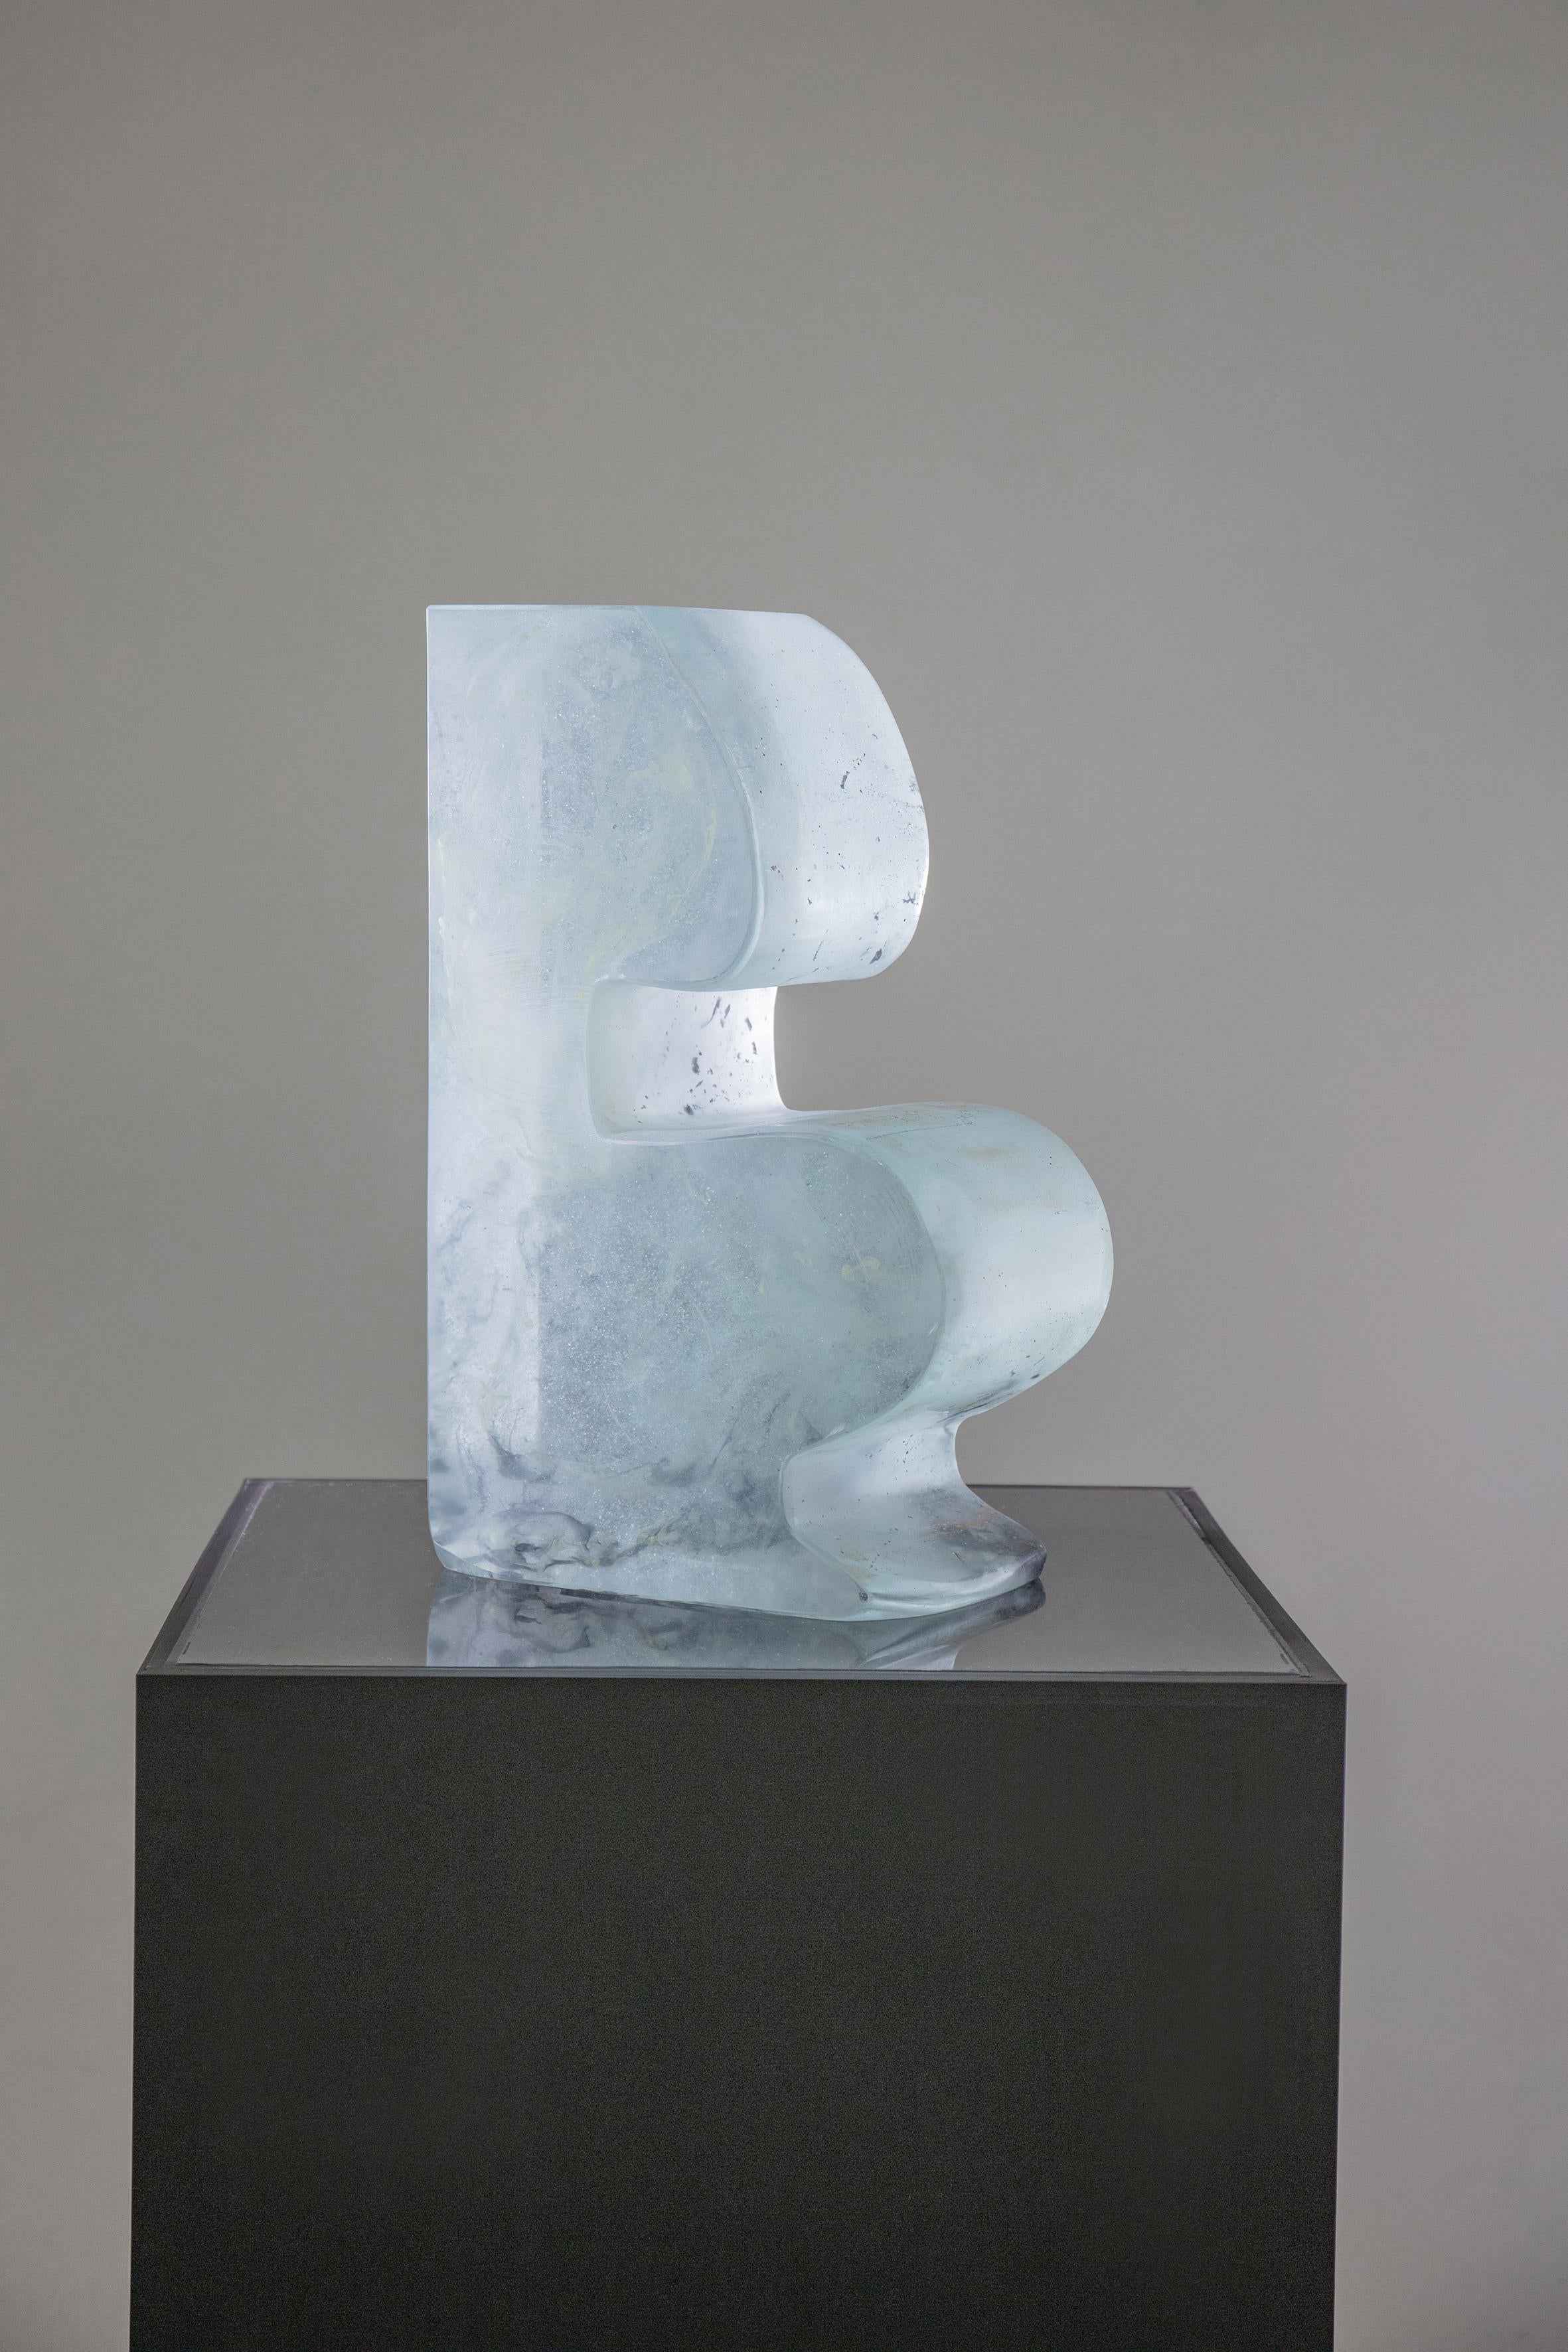 Farbenfarbene glasierte Glasur-Skulpturen-Serien Vier Jahreszeiten- Winter#1 (Grau), Abstract Sculpture, von He Wenjue